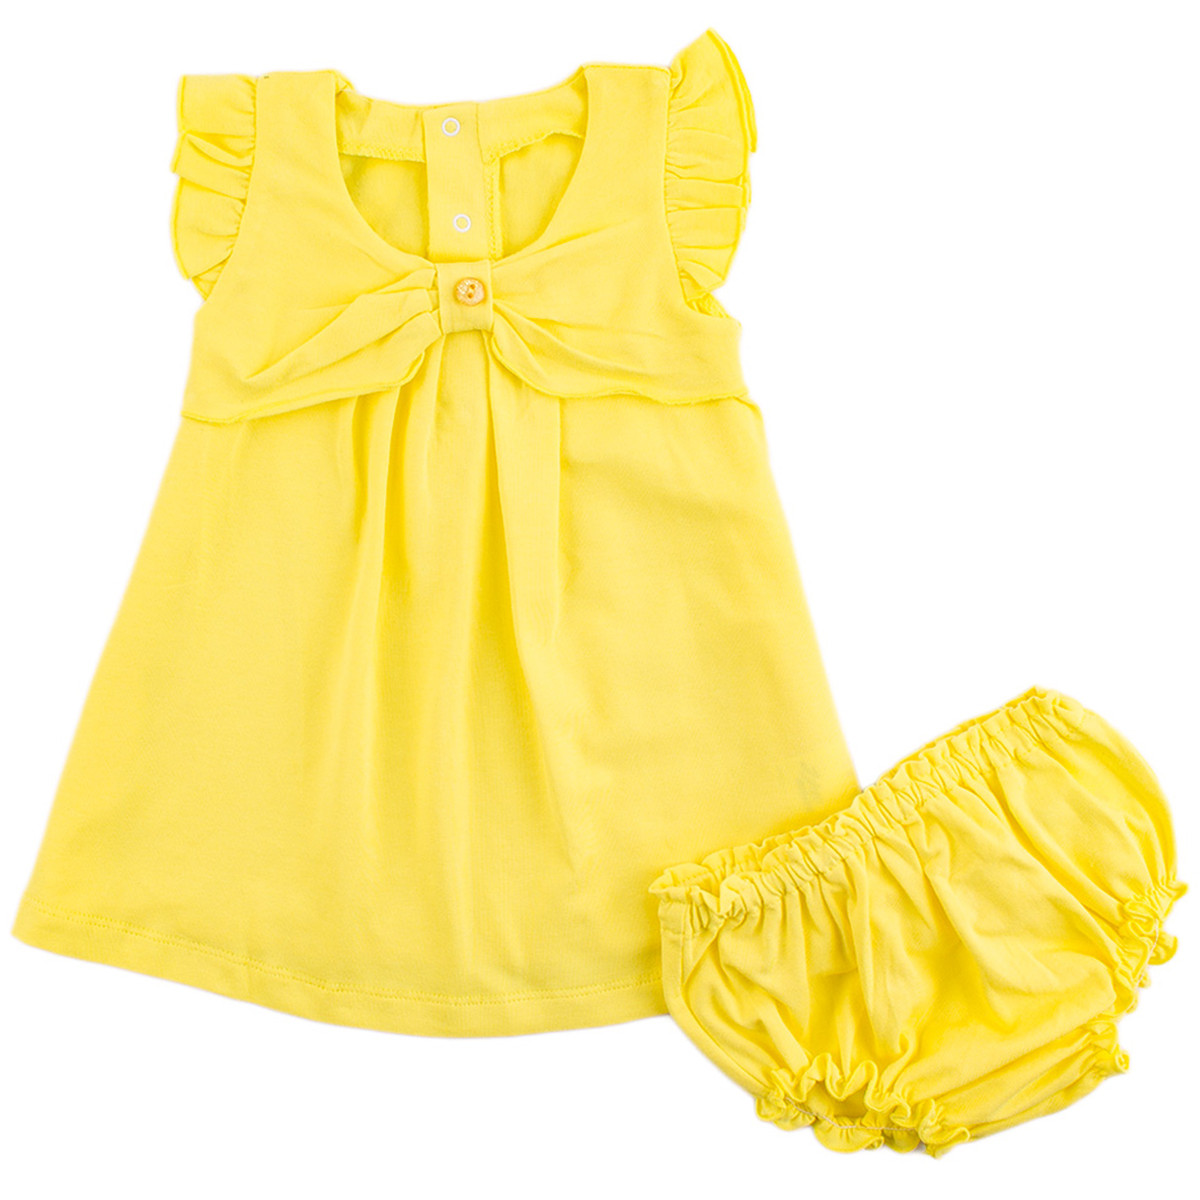 Бебешка лятна рокля с гащички в жълто